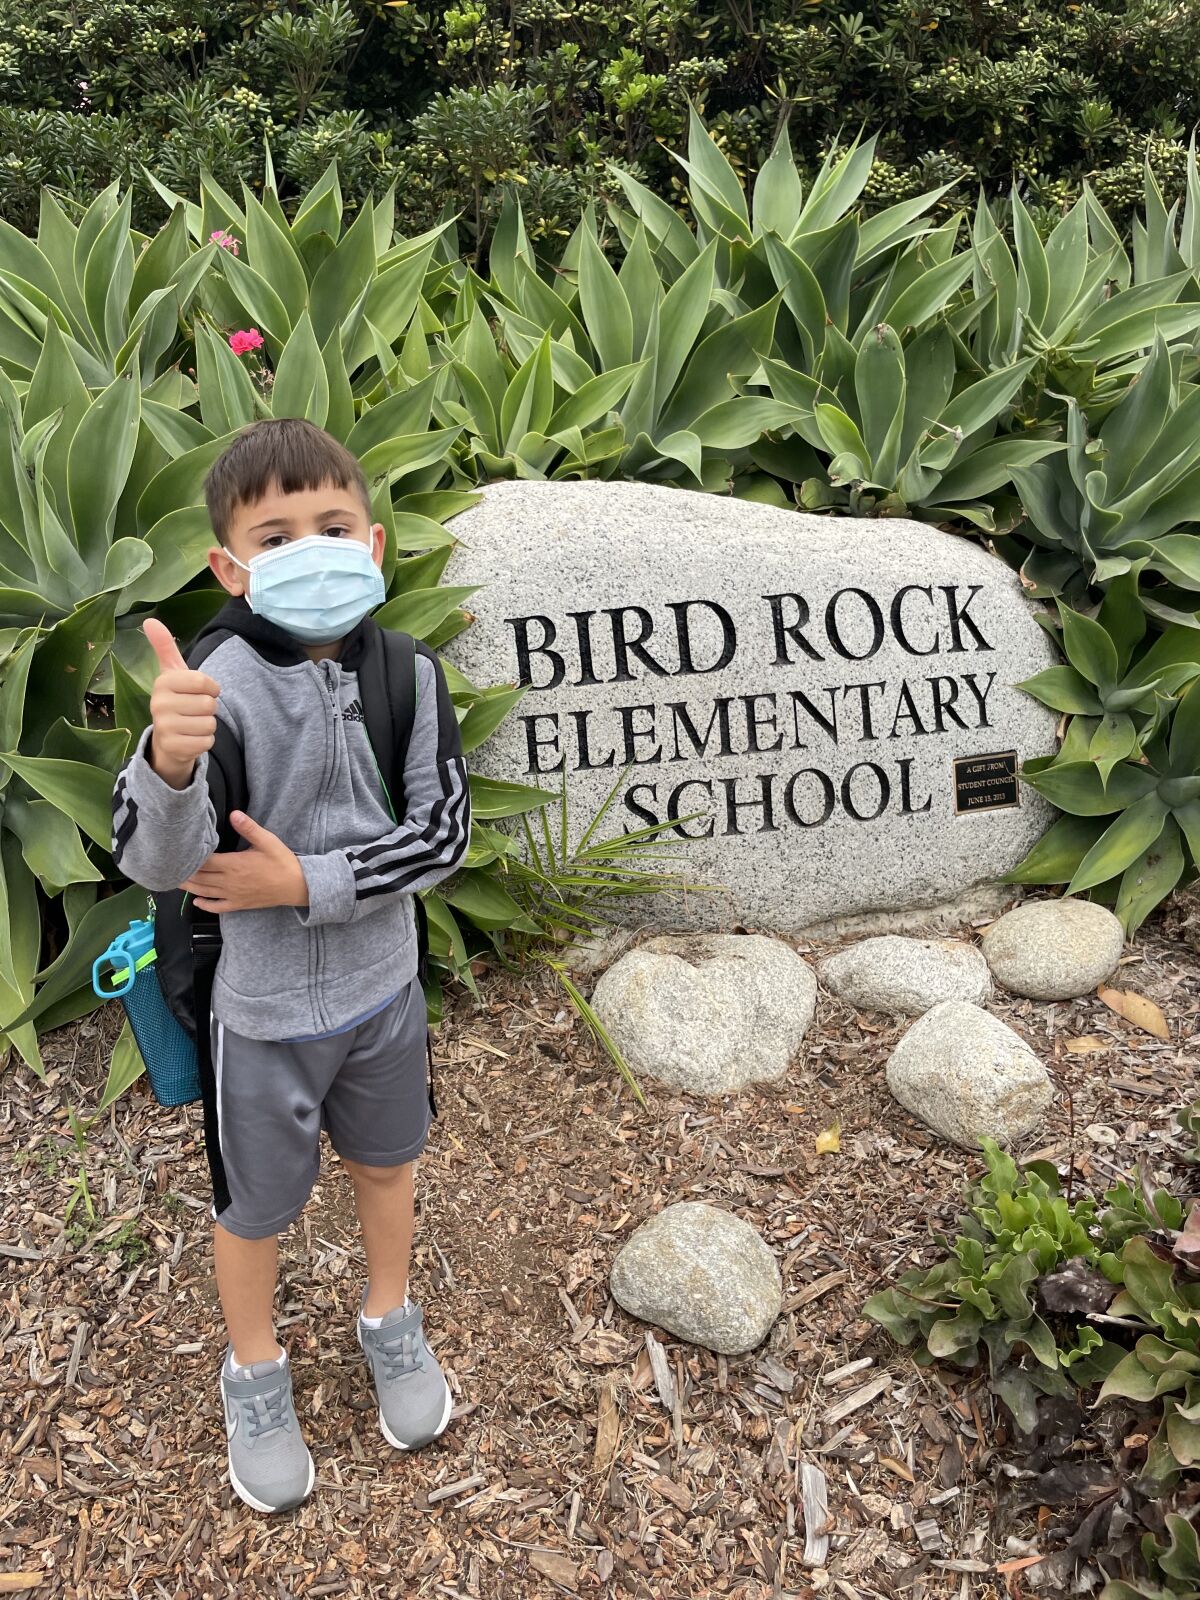 Kindergartner Michael Lipkovicius signals he's ready for Bird Rock Elementary School.